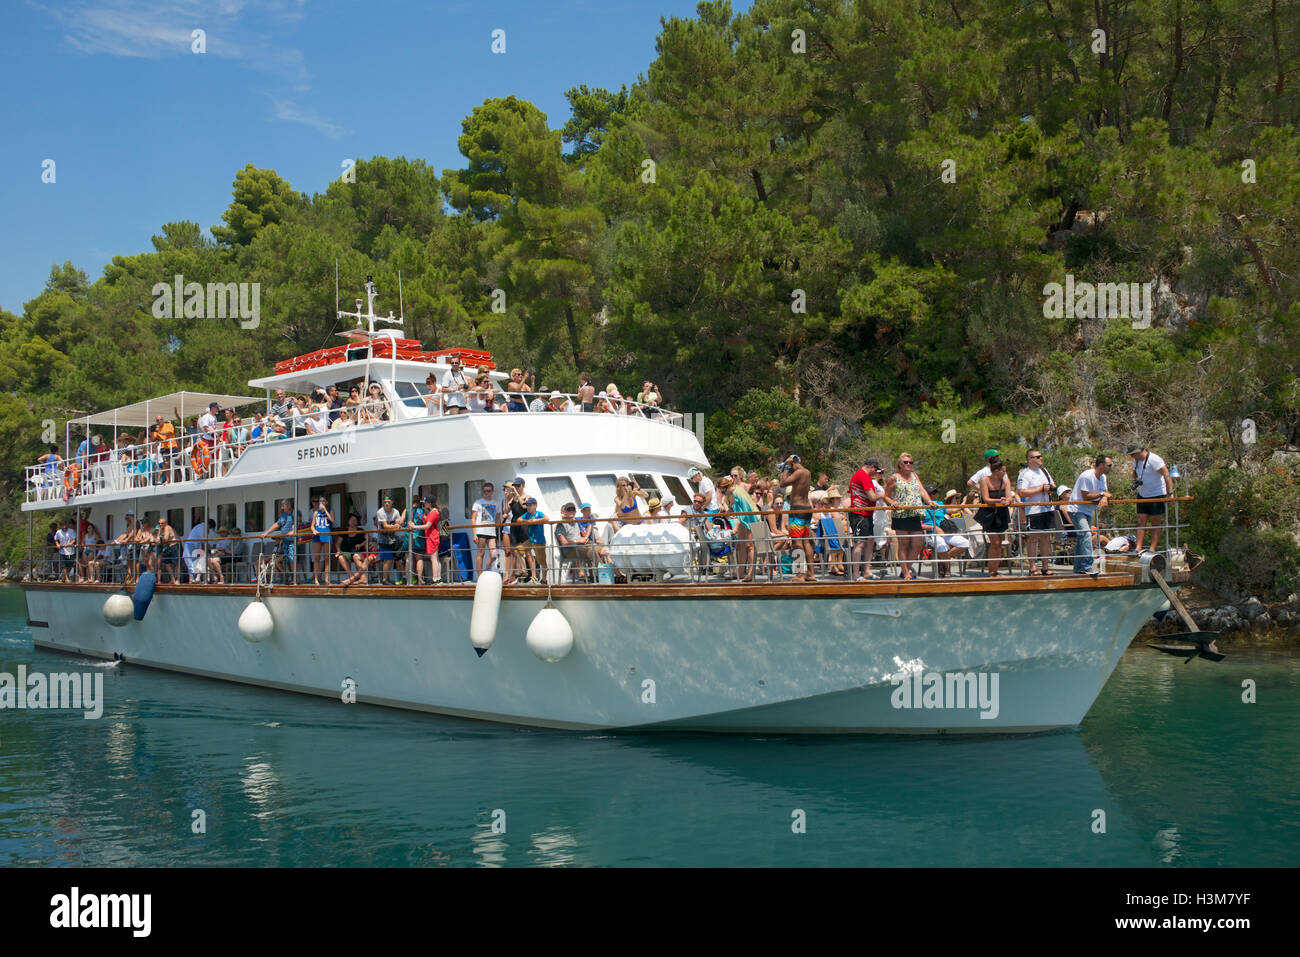 Spendoni einer überfüllten Touristenboot Gaios port Paxos Ionische Inseln Griechenland Stockfoto